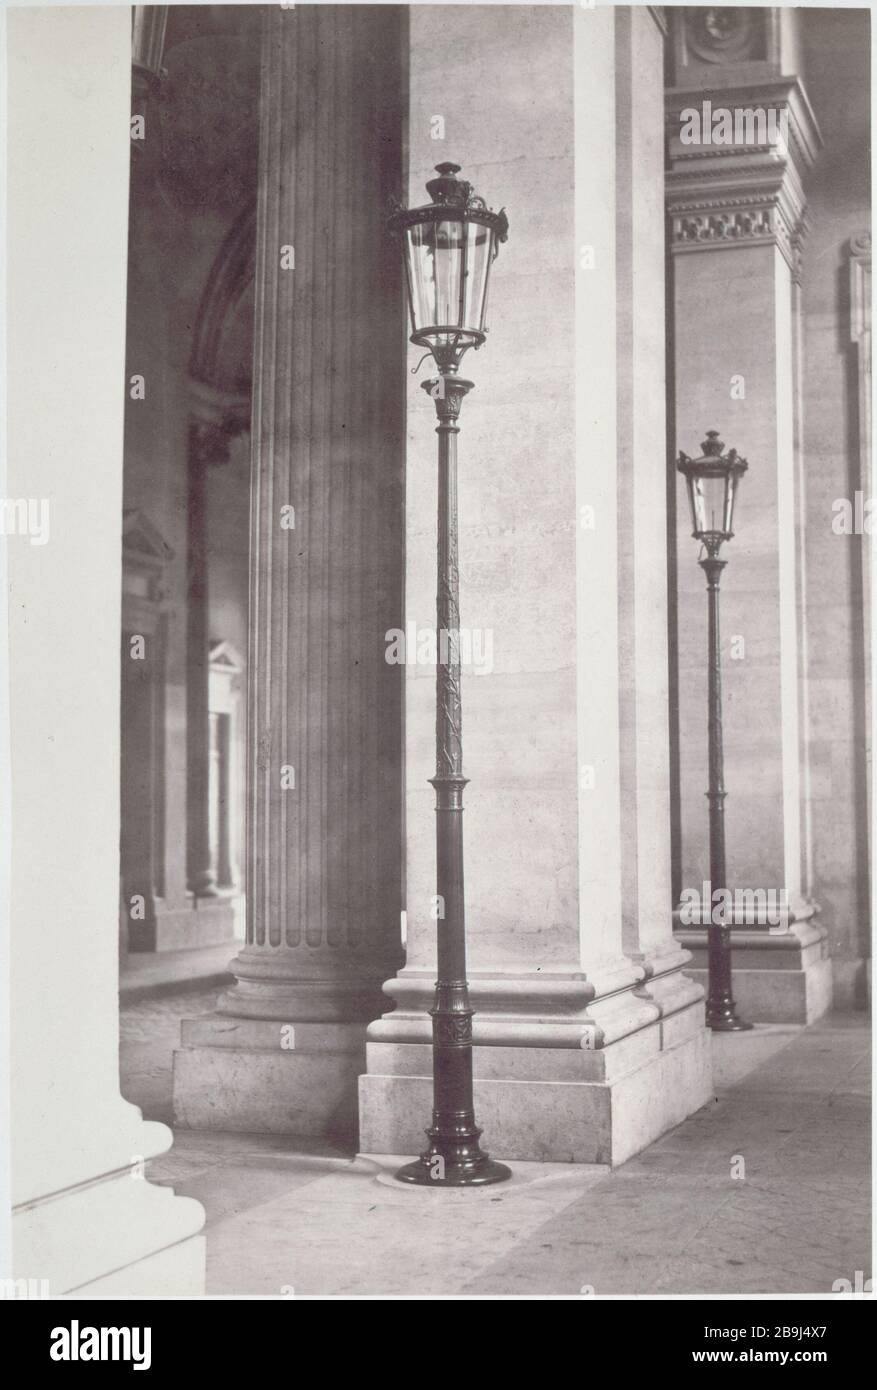 ALBUM FURNITURE Charles Marville (1813-1879). 'Album mobilier urbain : Louvre, Ier arrondissement : réverbères', vers 1860. Paris, musée Carnavalet. Stock Photo